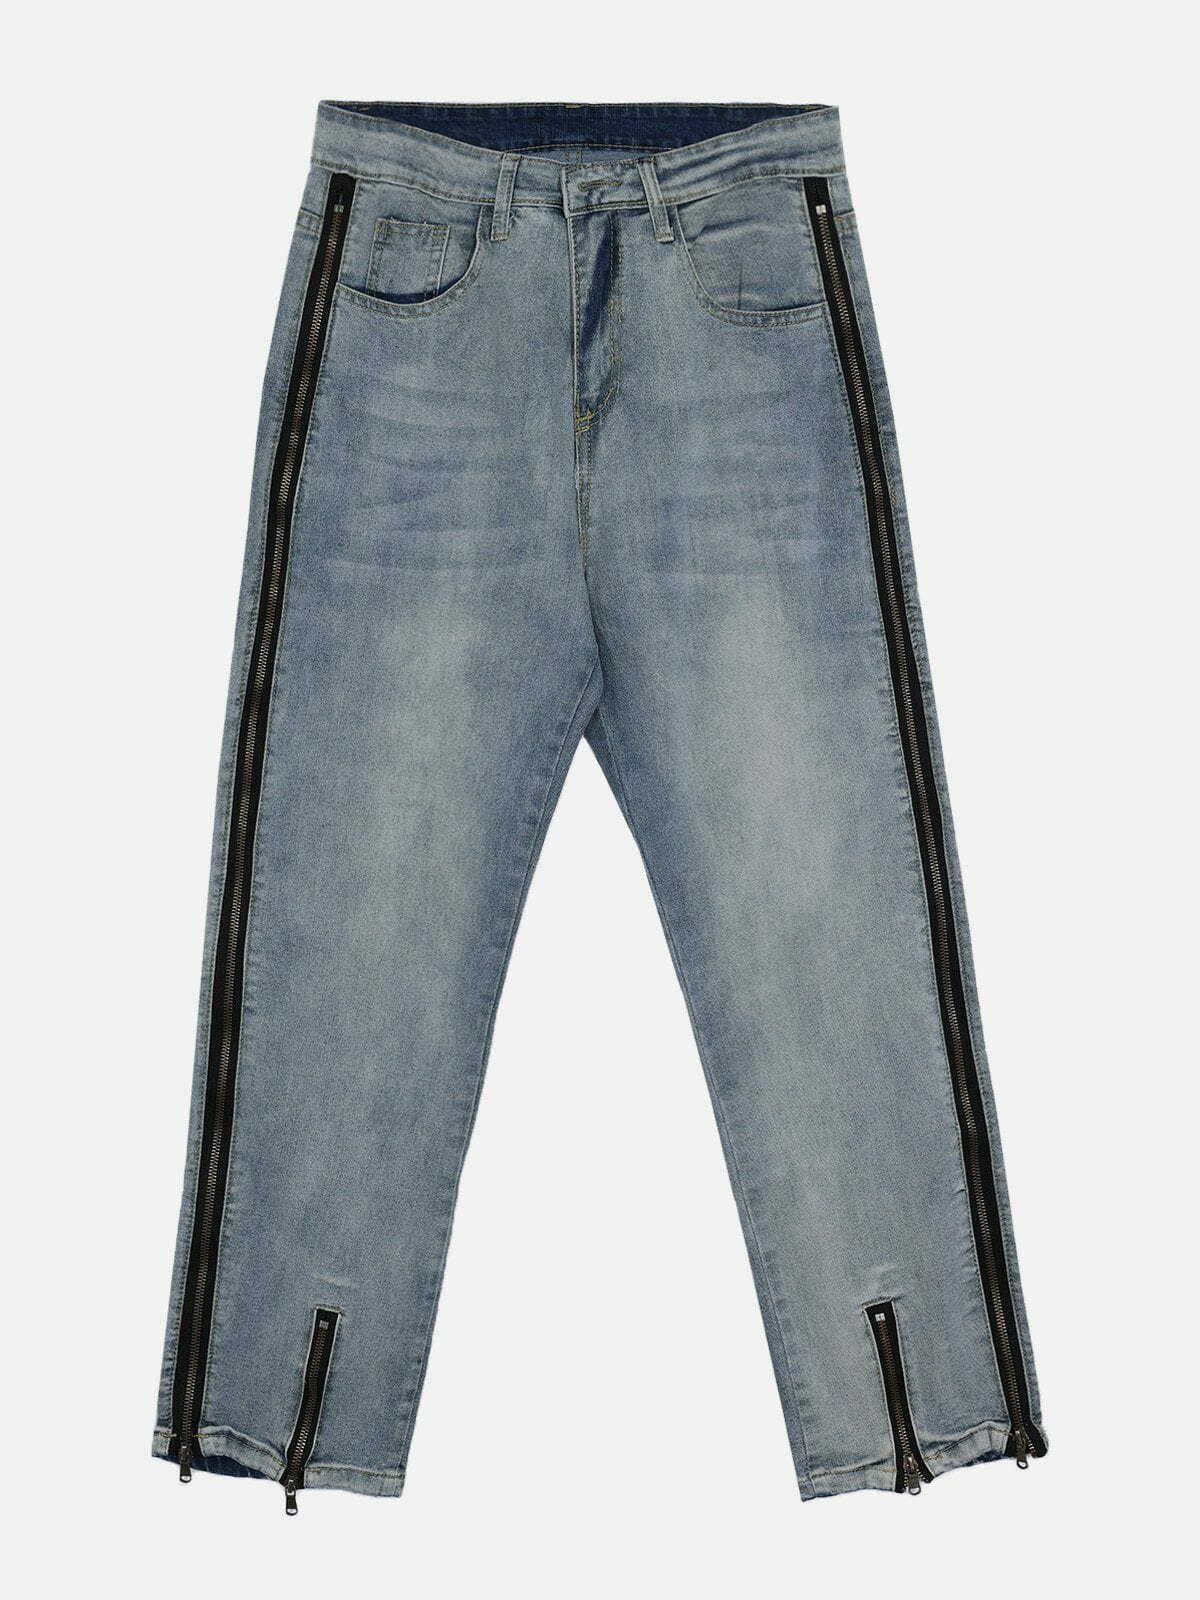 distressed zip jeans edgy & vintage streetwear 1522